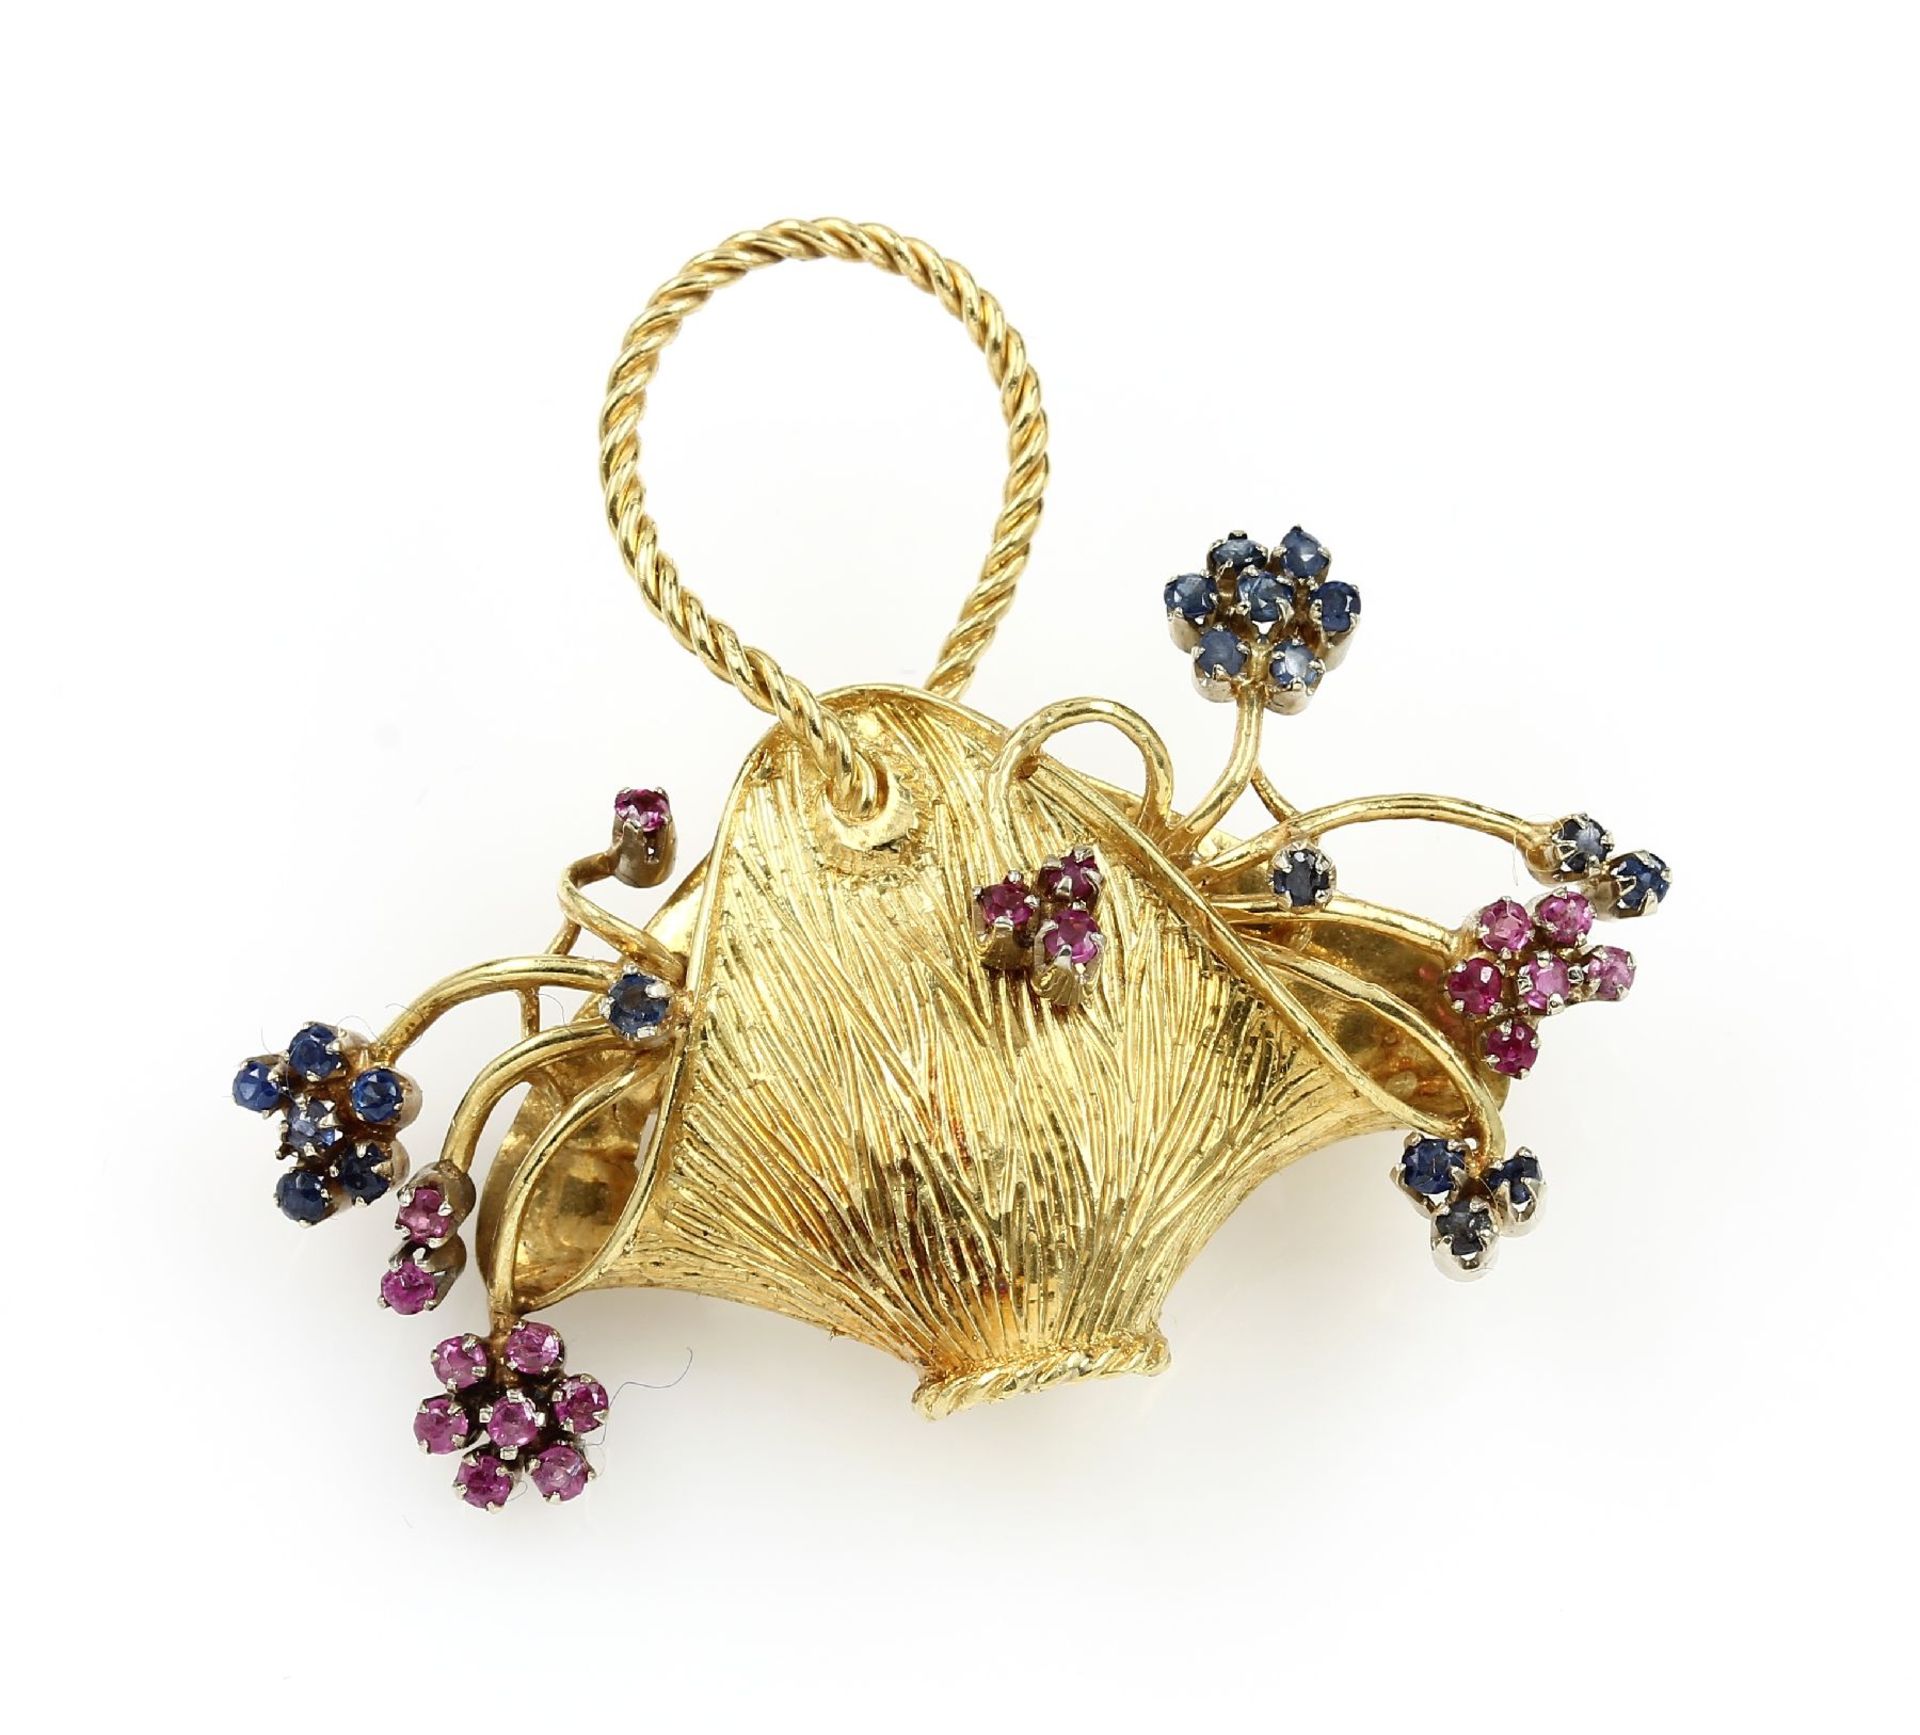 18 kt gold brooch with coloured stones , "flower basket", YG 750/000, surface struct., bevelled